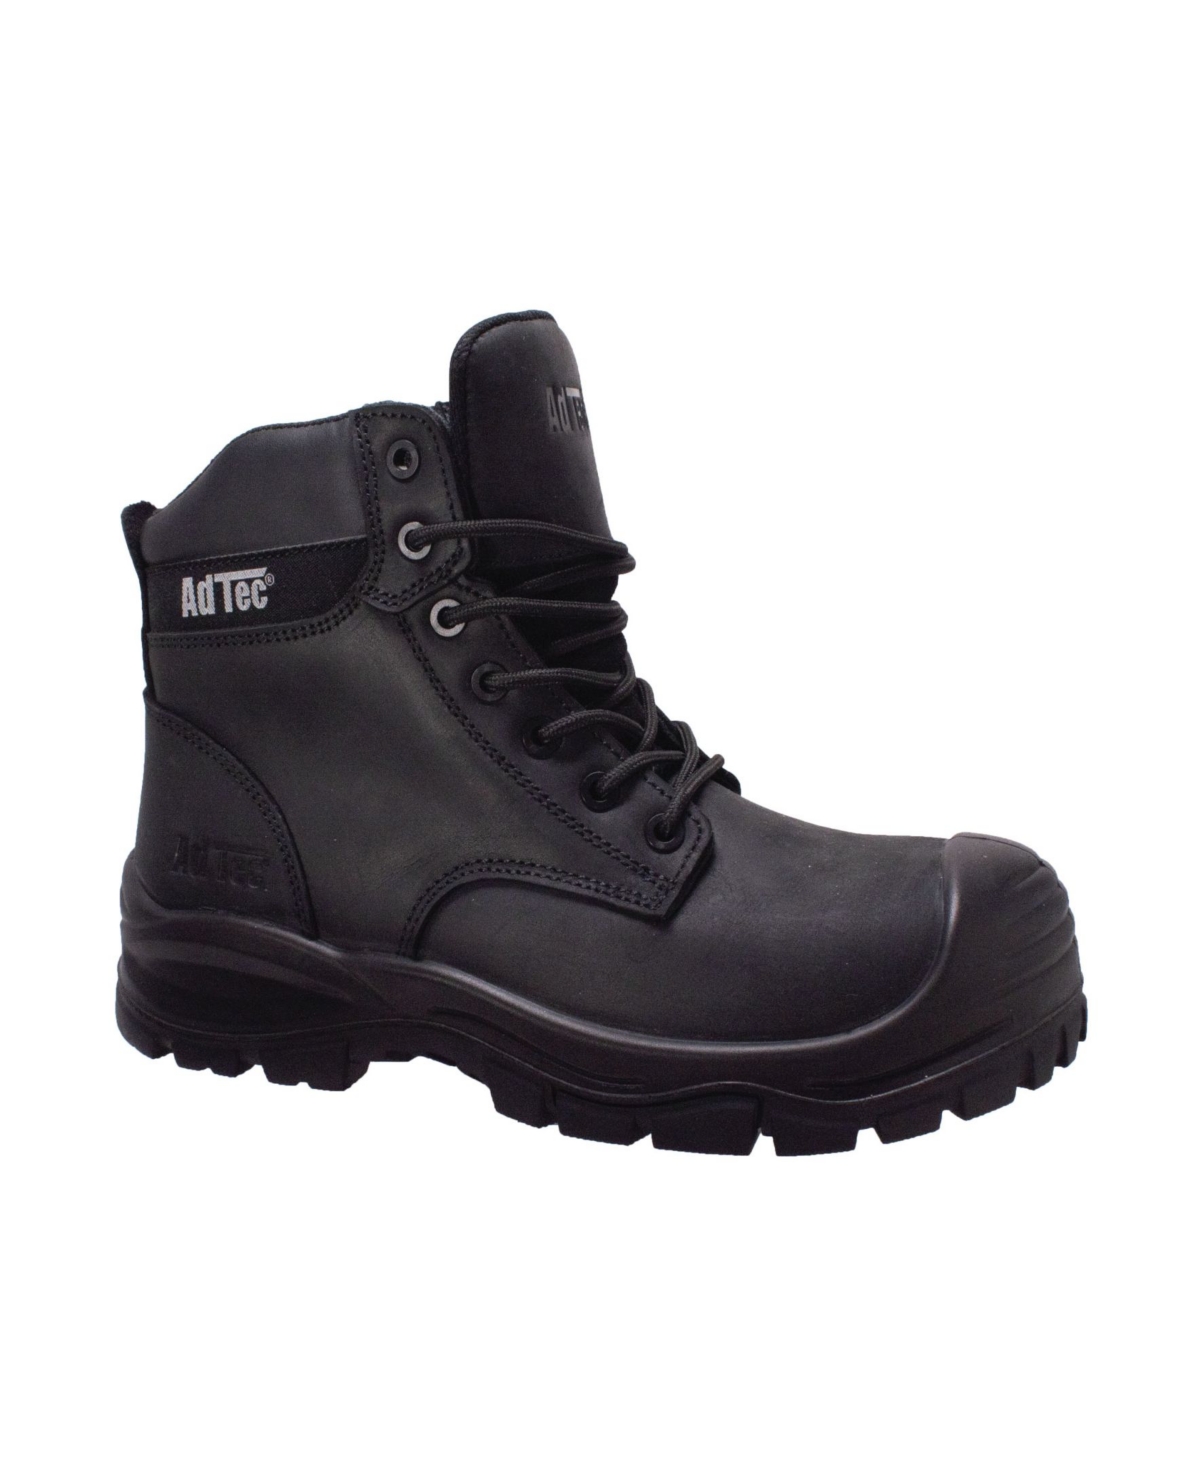 Adtec Men's Composite Toe Work Boot Men's Shoes